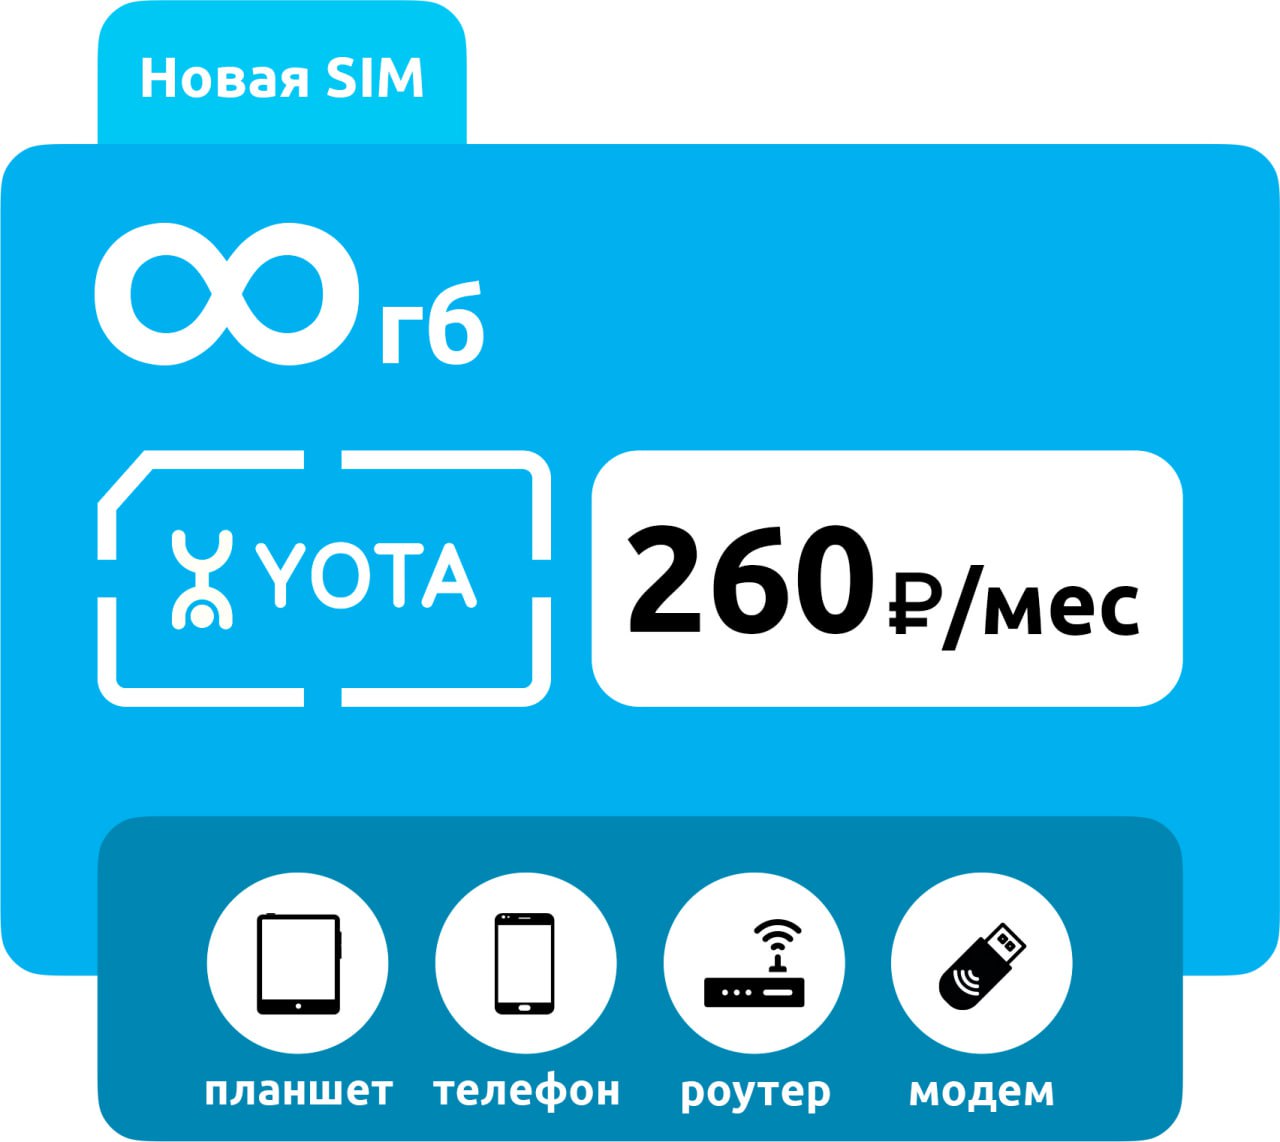 SIM-карта Yota 260 без раздачи (для любого устройства) фото